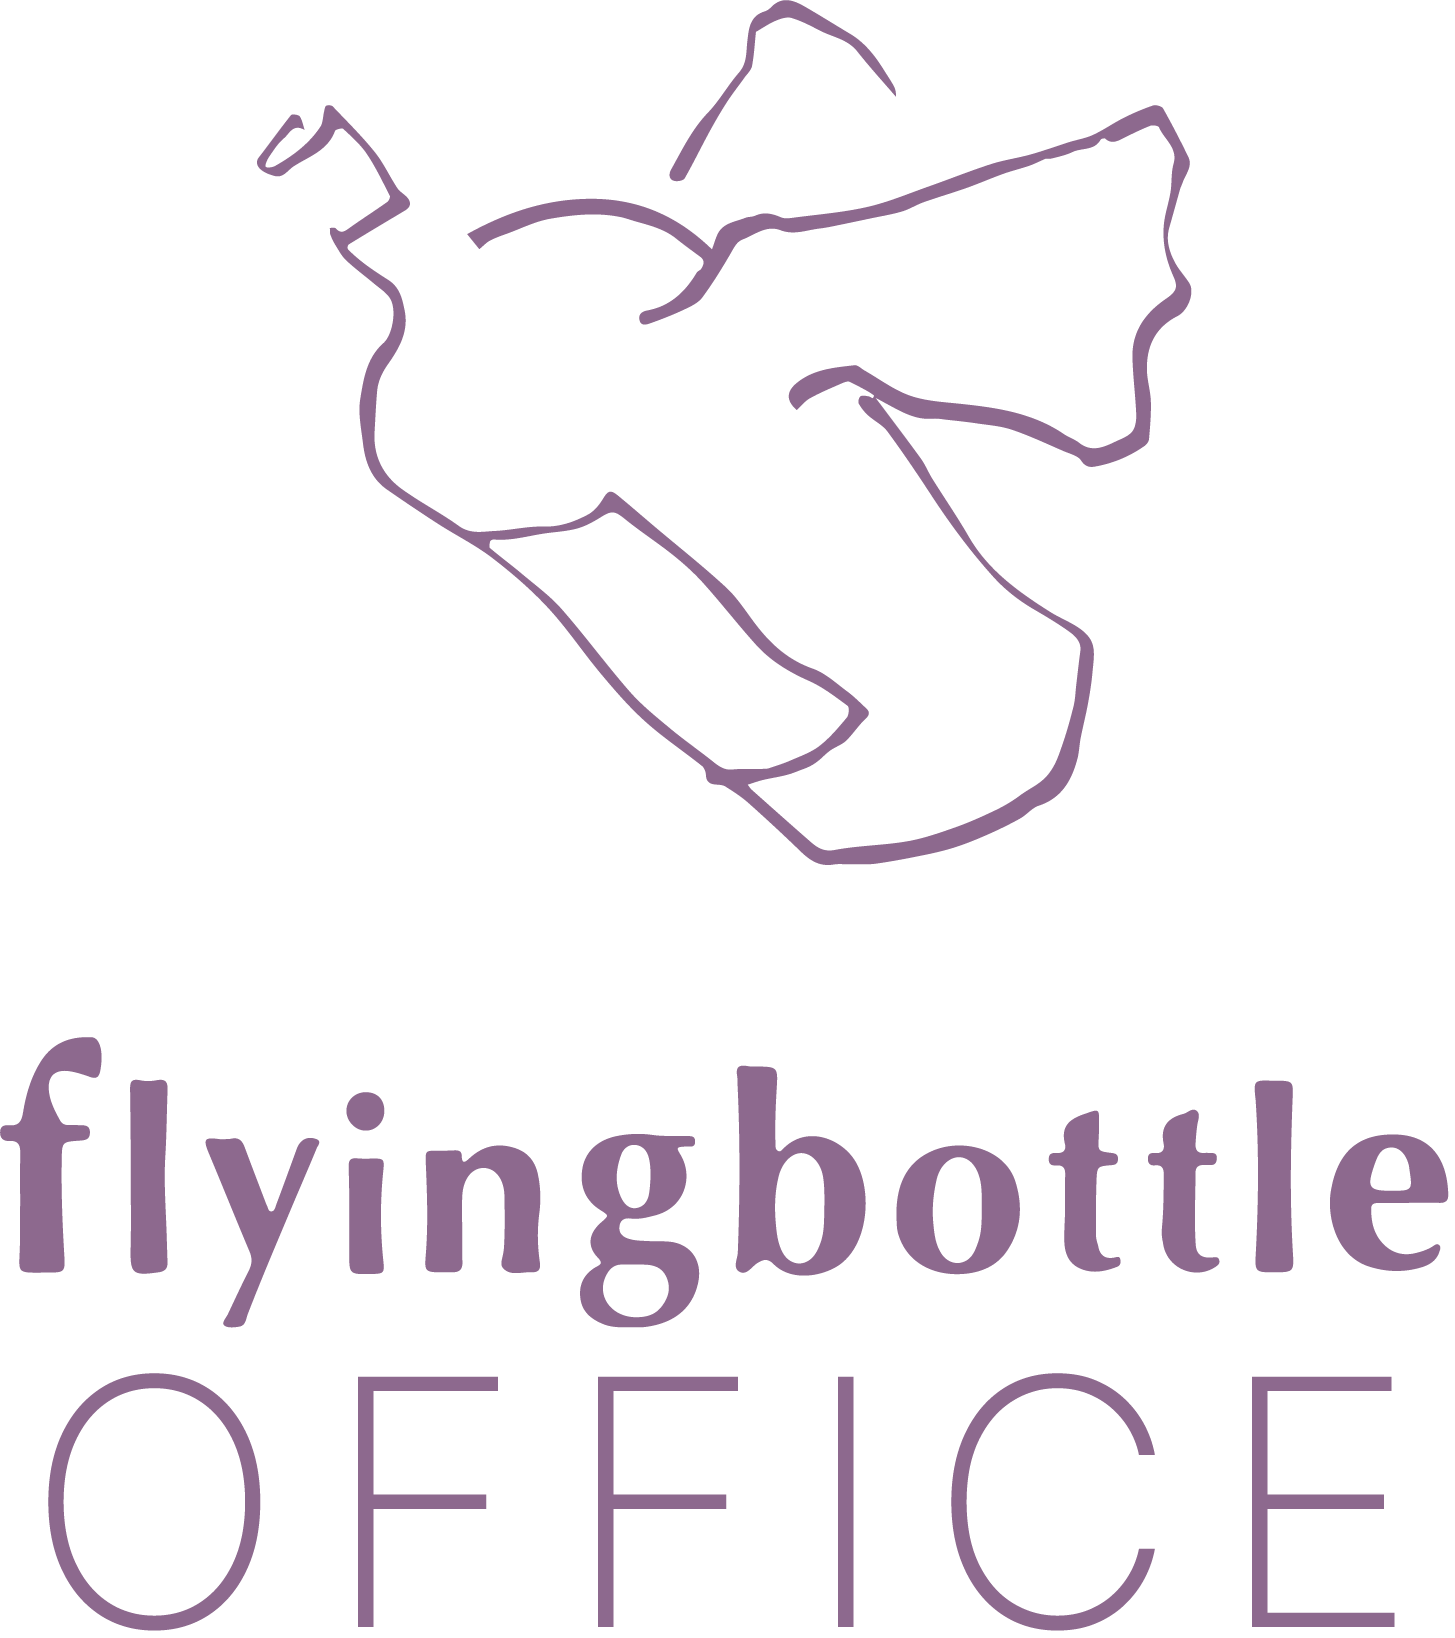 flyingbottle office